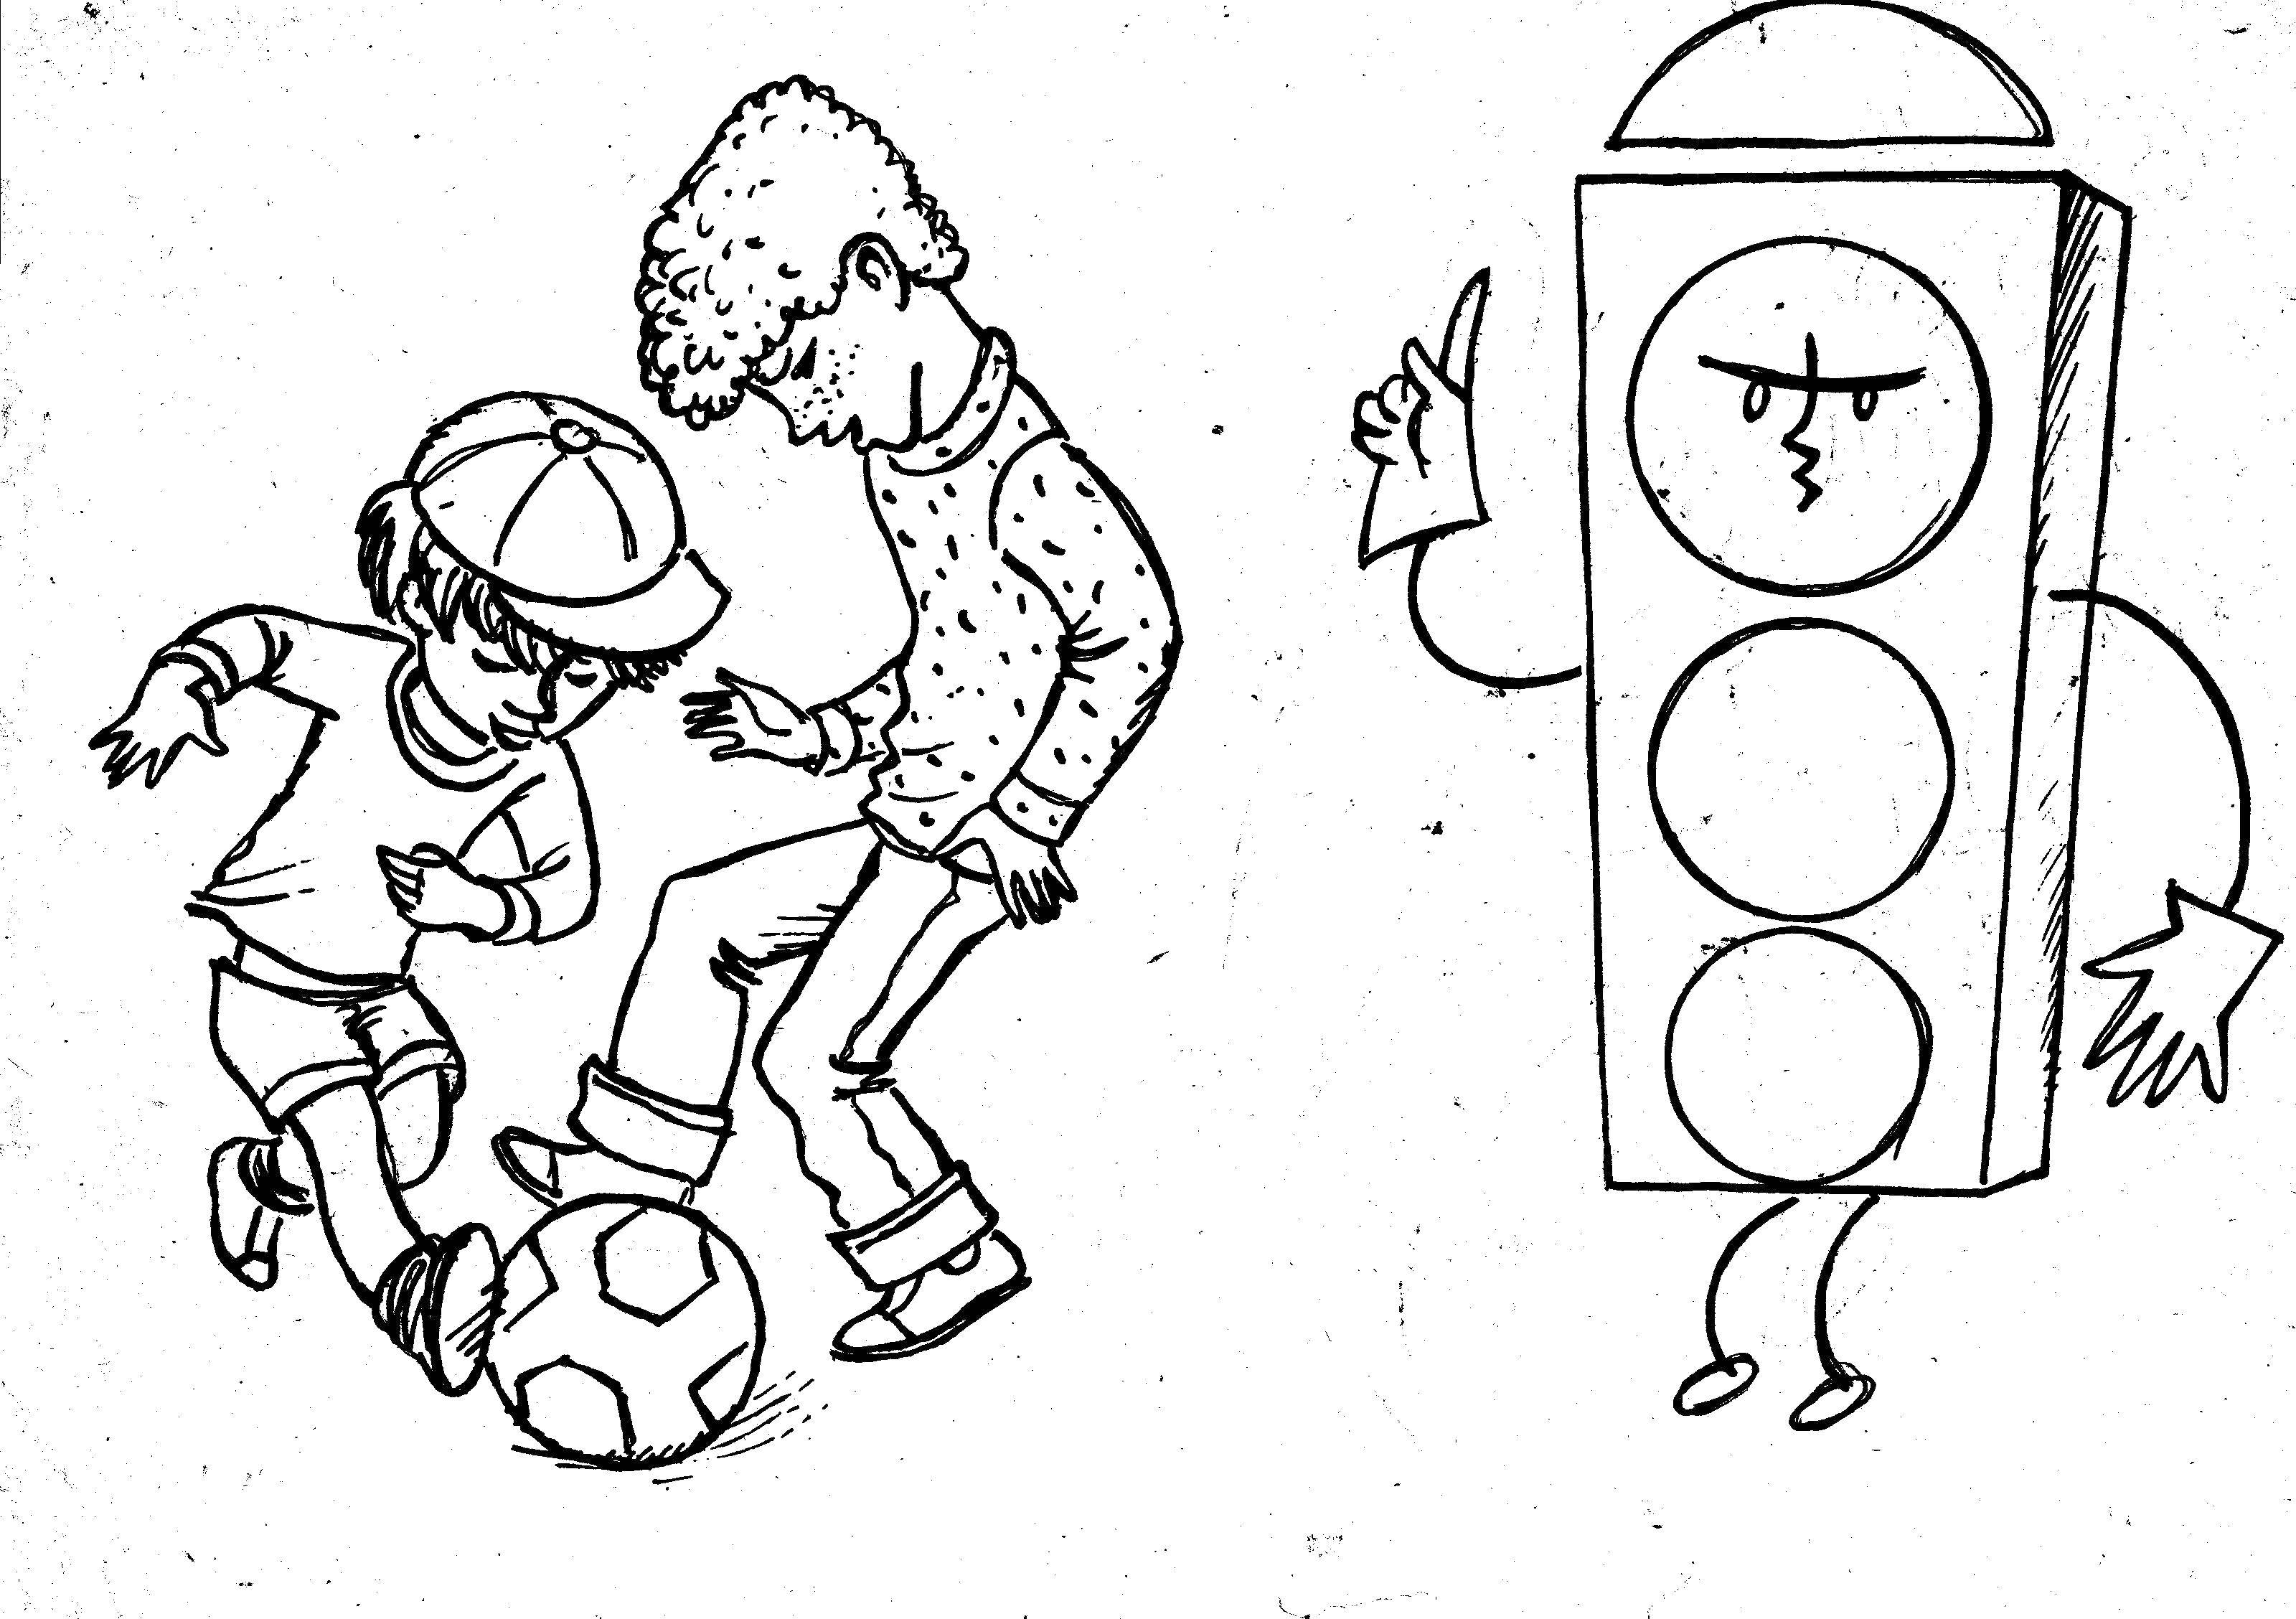 Опис: розмальовки  Діти грають у футбол на дорозі. Категорія: світлофор. Теги:  світлофор, машина, дорога.